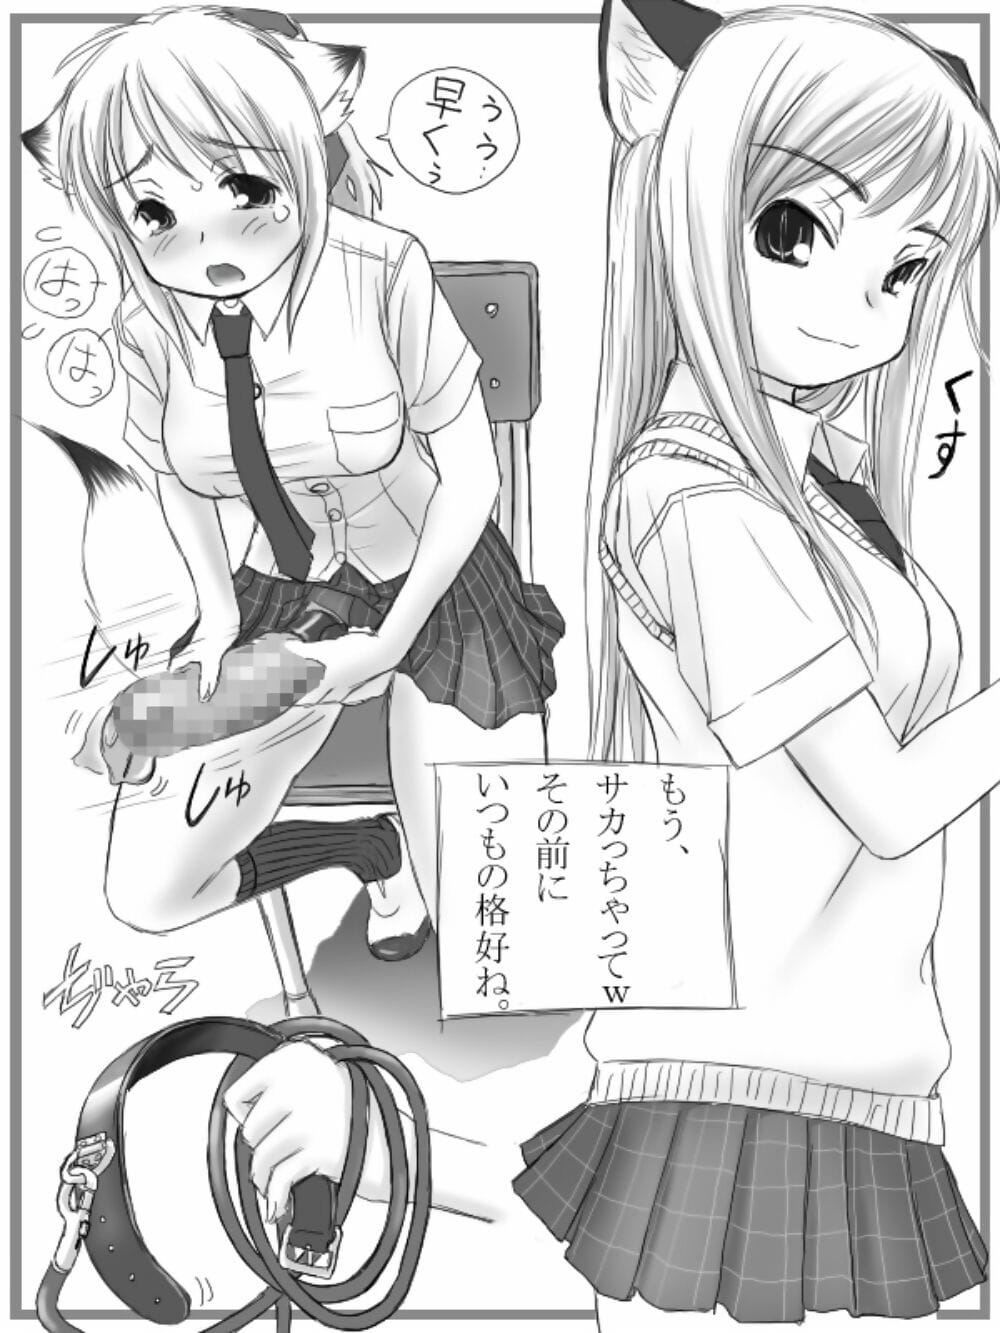 mui garou mui Futanari san afbeelding shuu + omake manga digitaal Onderdeel 3